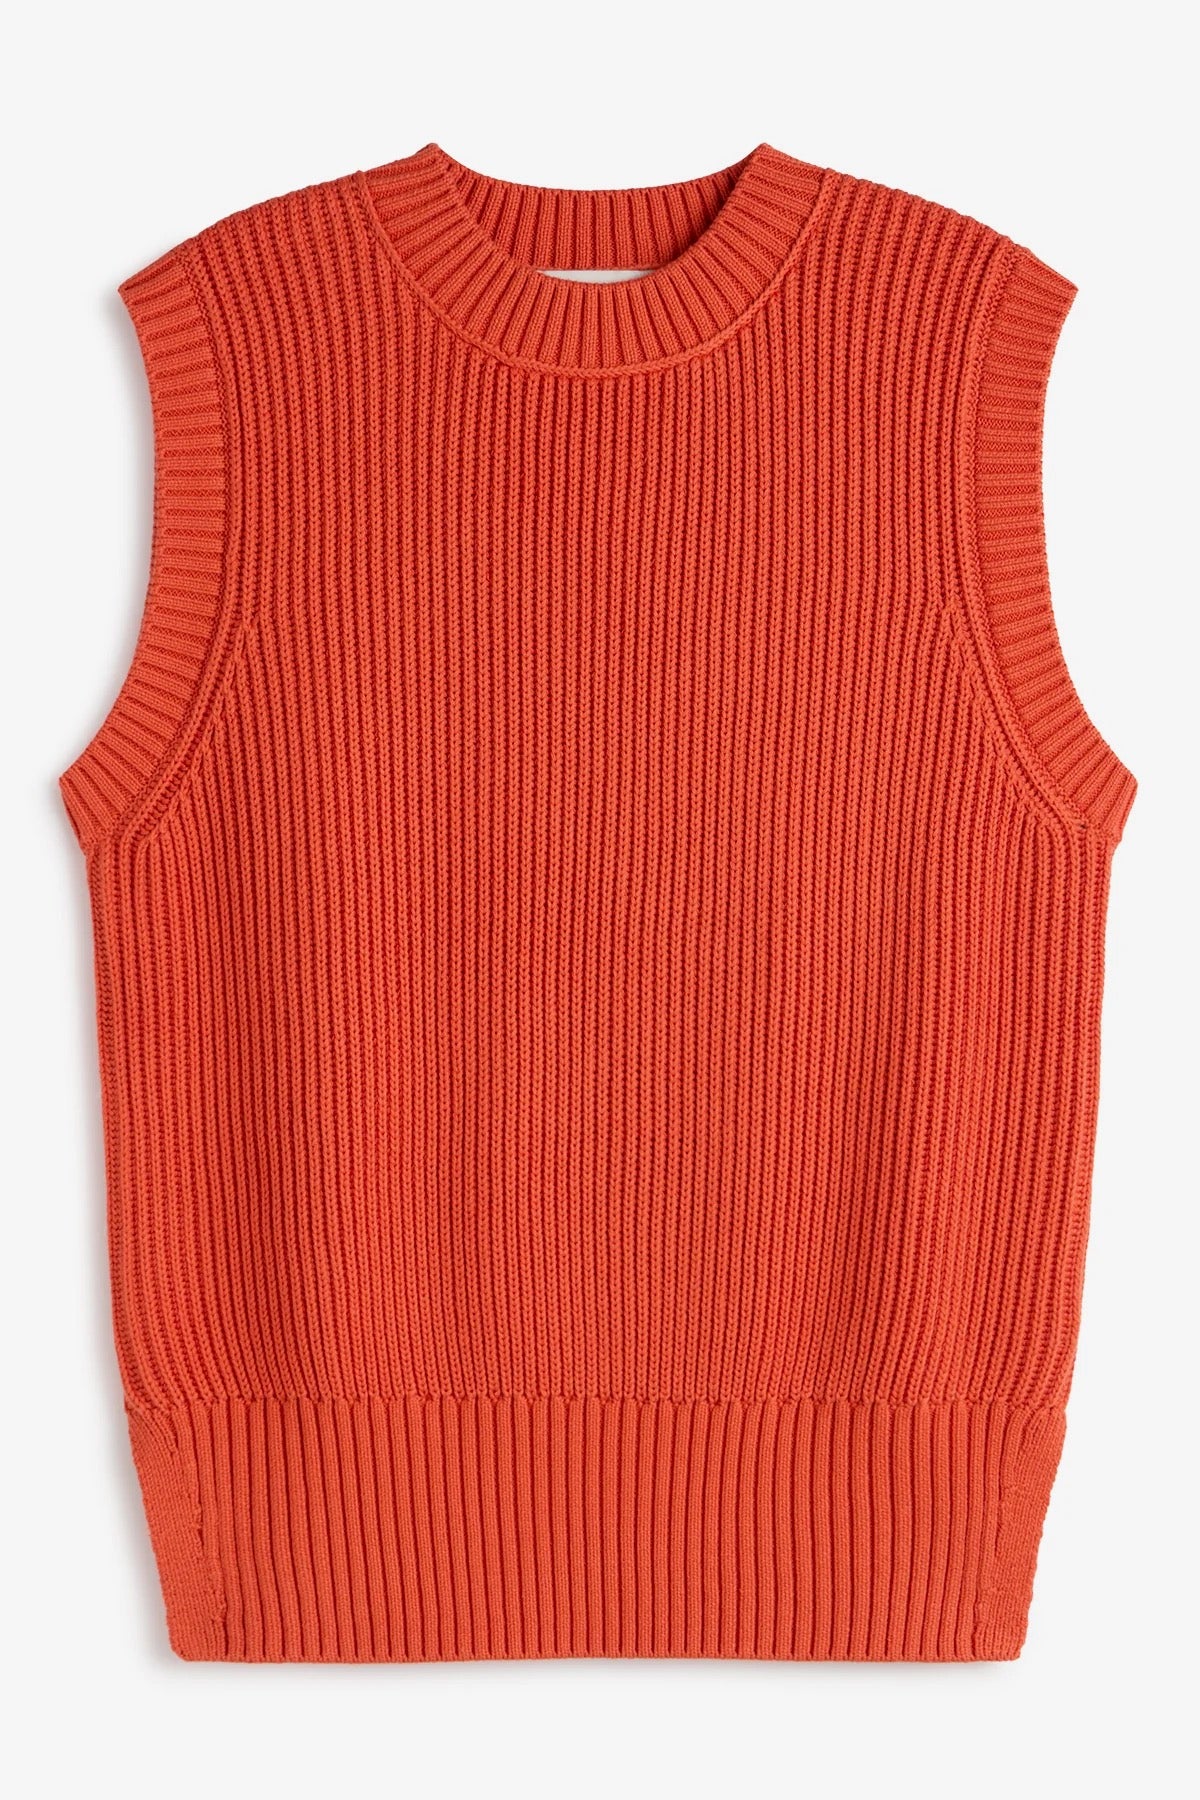 HIEDRA Knit dusty orange